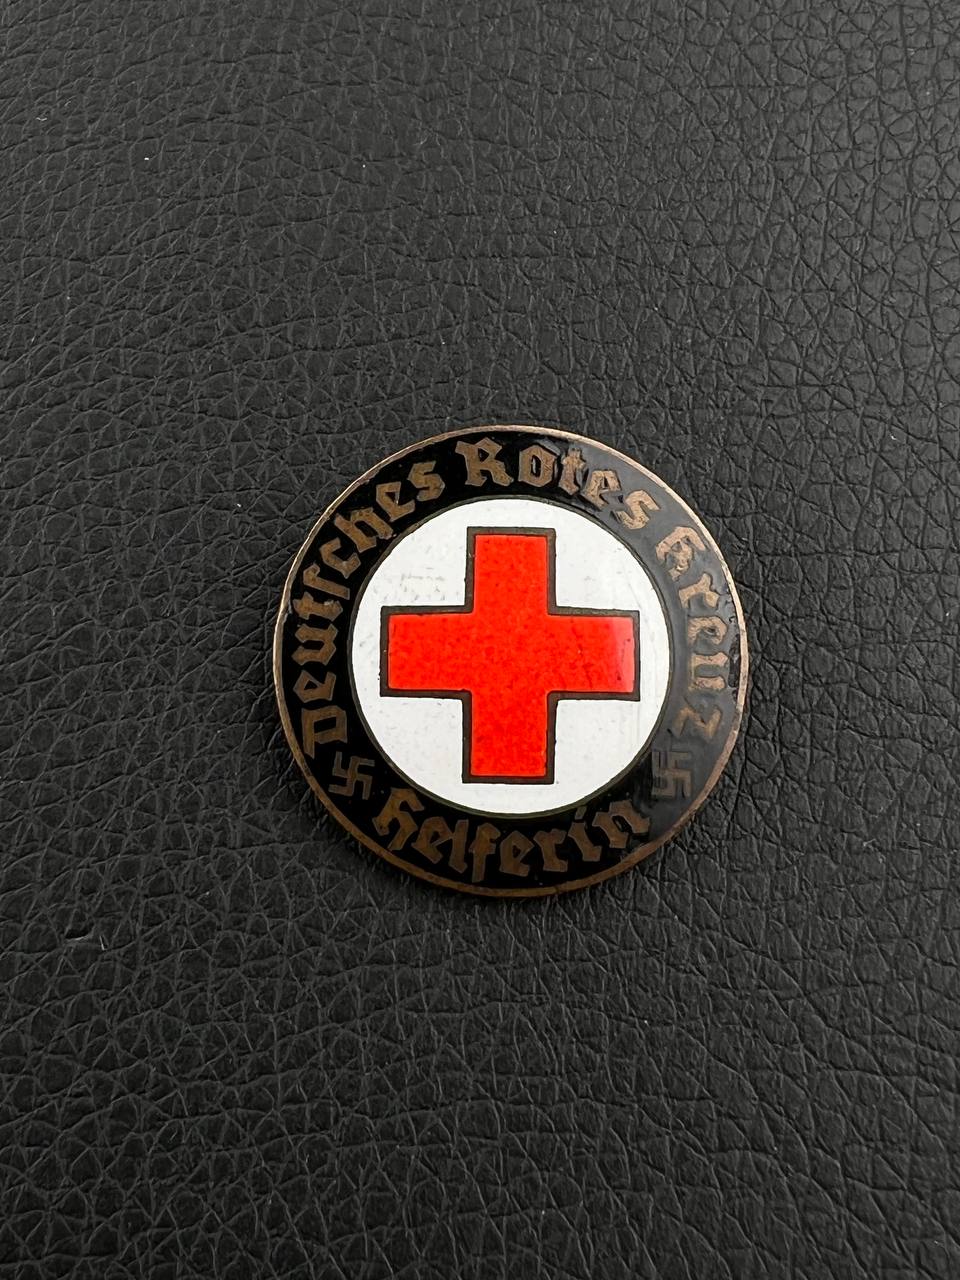 Нагрудный знак медсестры Немецкого Красного креста(DRK). От Алексея С.